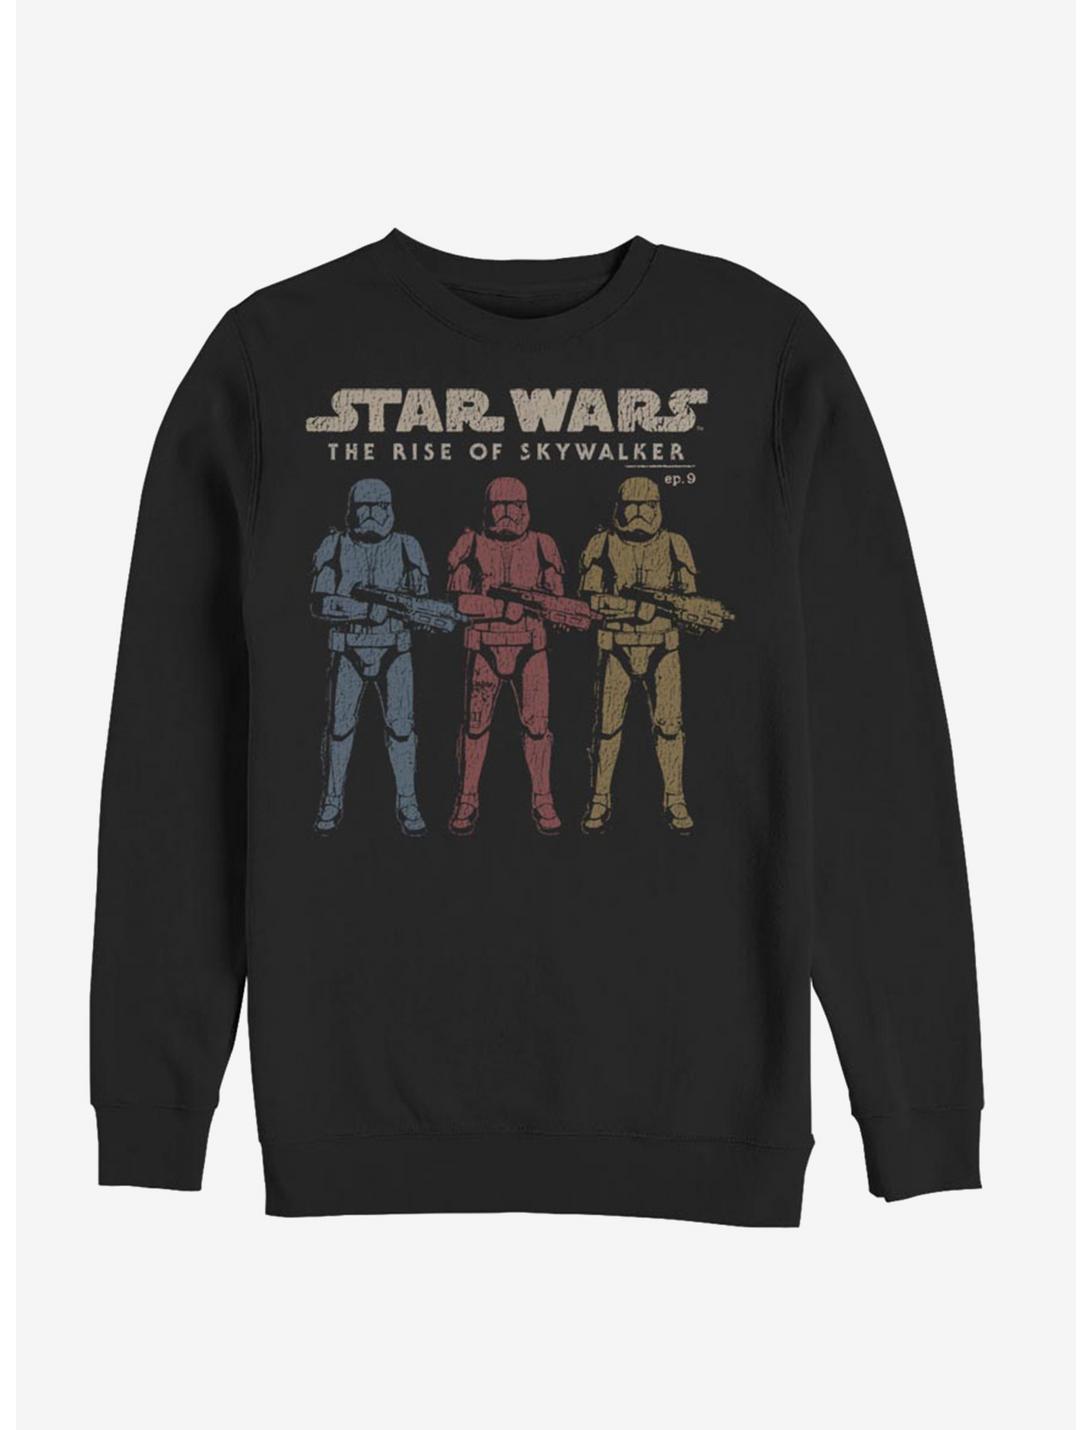 Star Wars Episode IX The Rise Of Skywalker Color Guards Sweatshirt, BLACK, hi-res